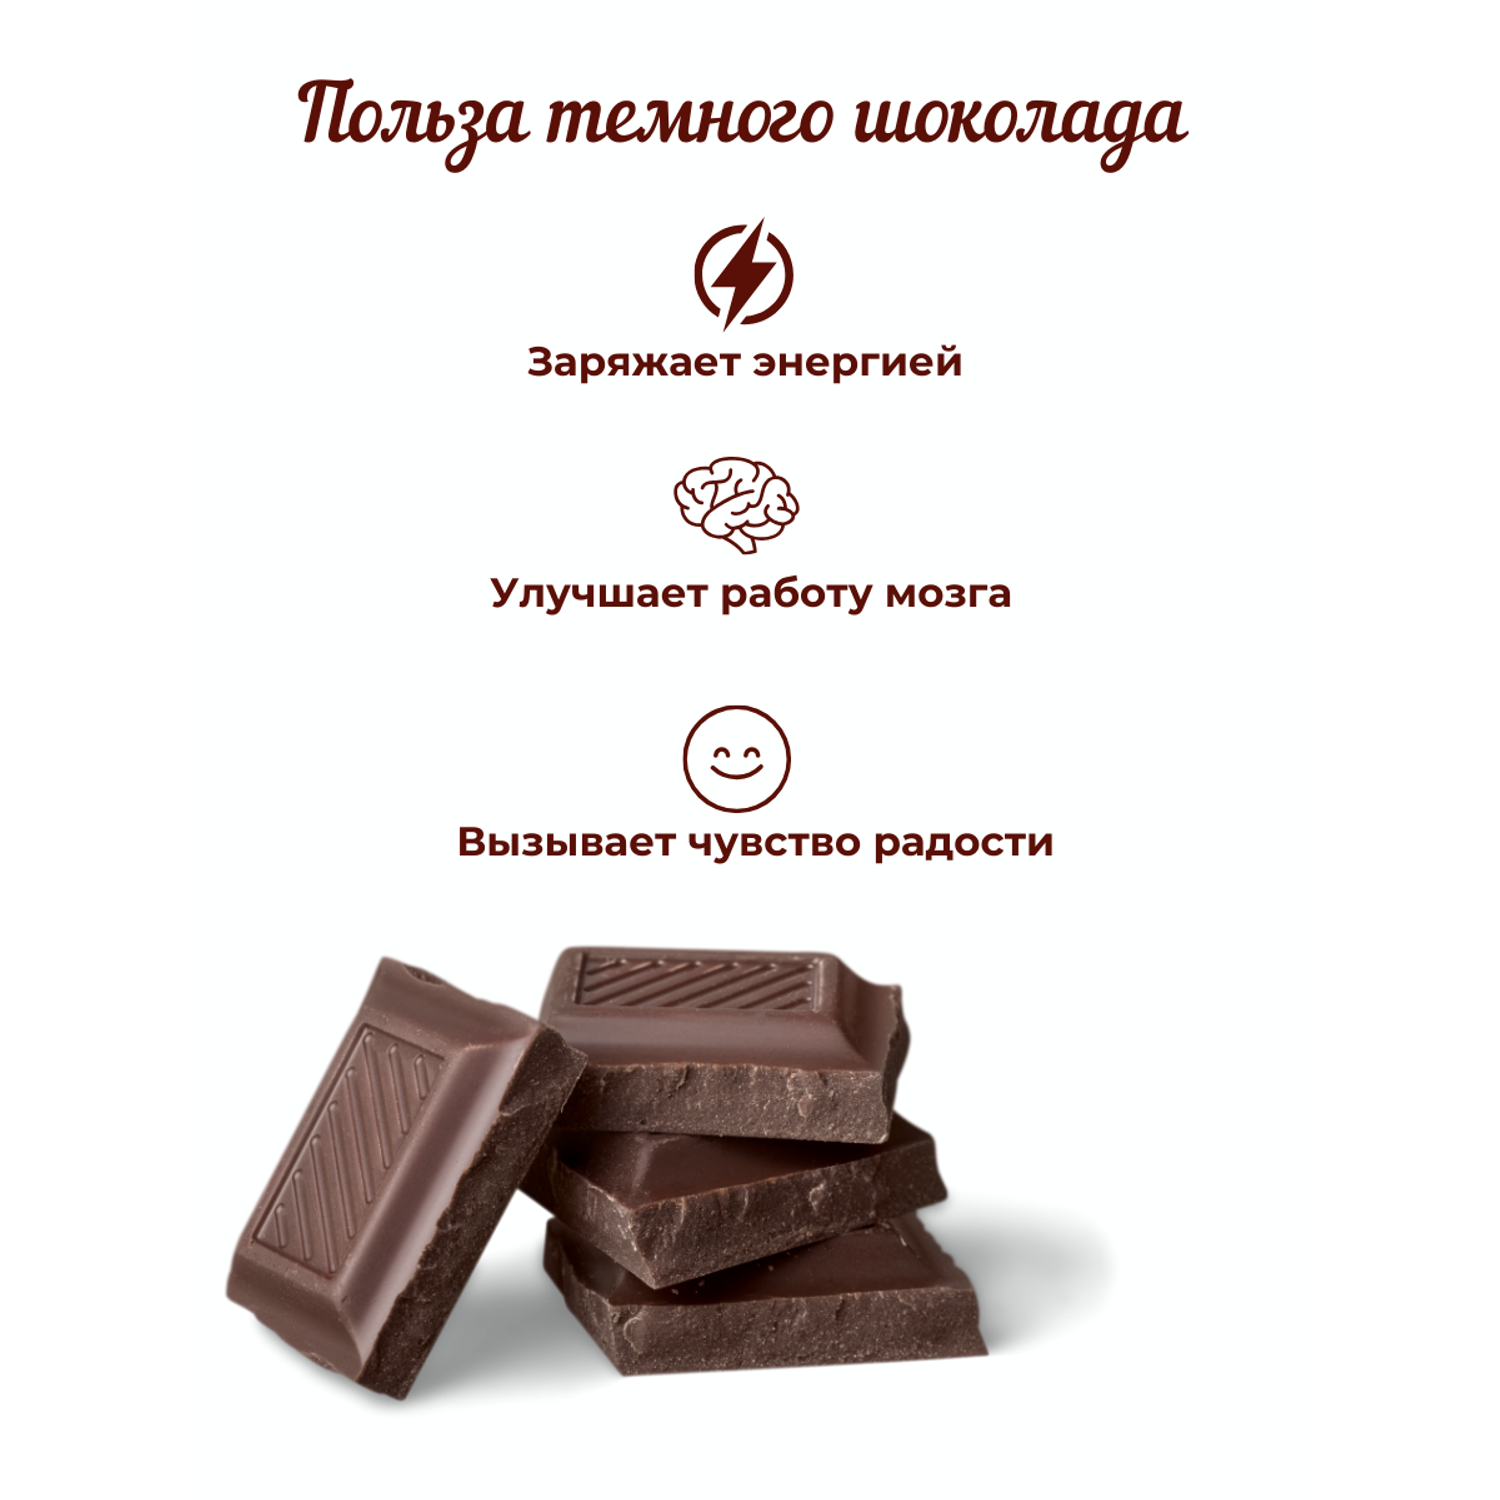 12 ягод и орехов в шоколаде Сладости от Юрича 500гр - фото 6